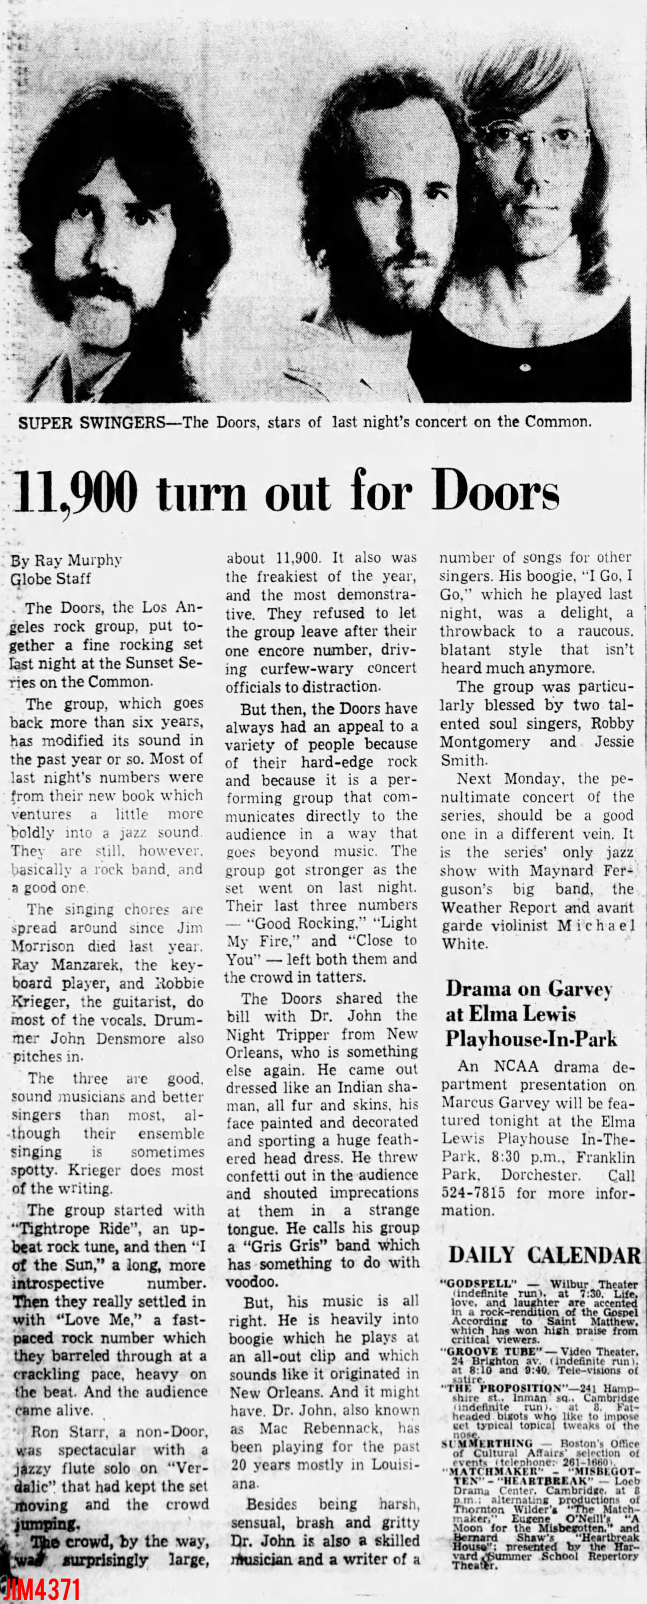 The Doors - Boston Common 1972 - Review